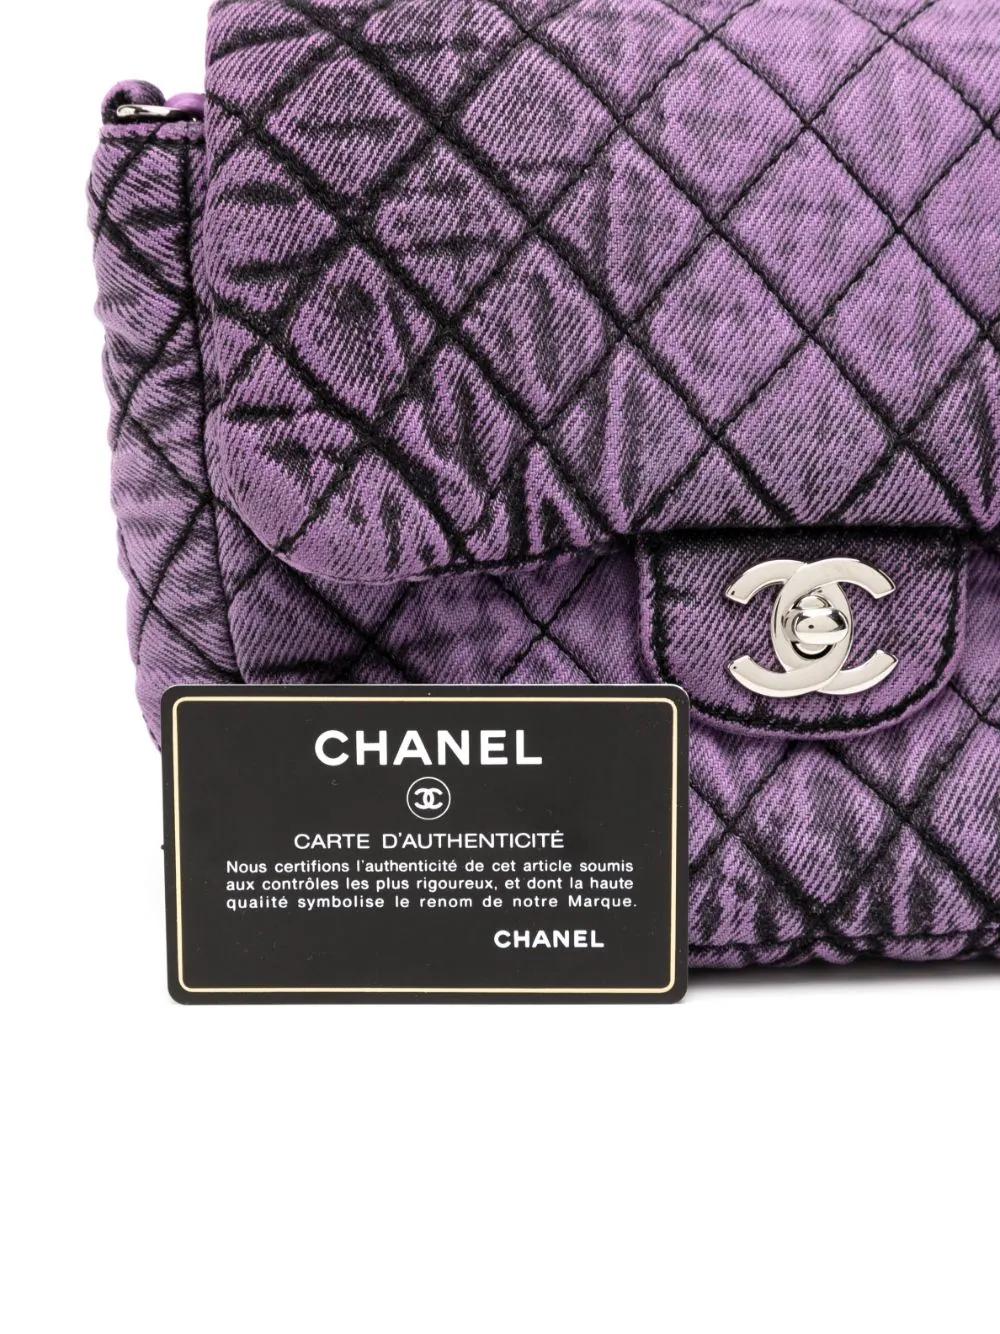 Issu de la Collection Salsa 2020 de Chanel, ce sac en denim est d'une élégance et d'un raffinement sans faille. La forme emblématique et l'emboîtement CC apportent la classe, tandis que le denim et la taille mini apportent l'audace et la fraîcheur.